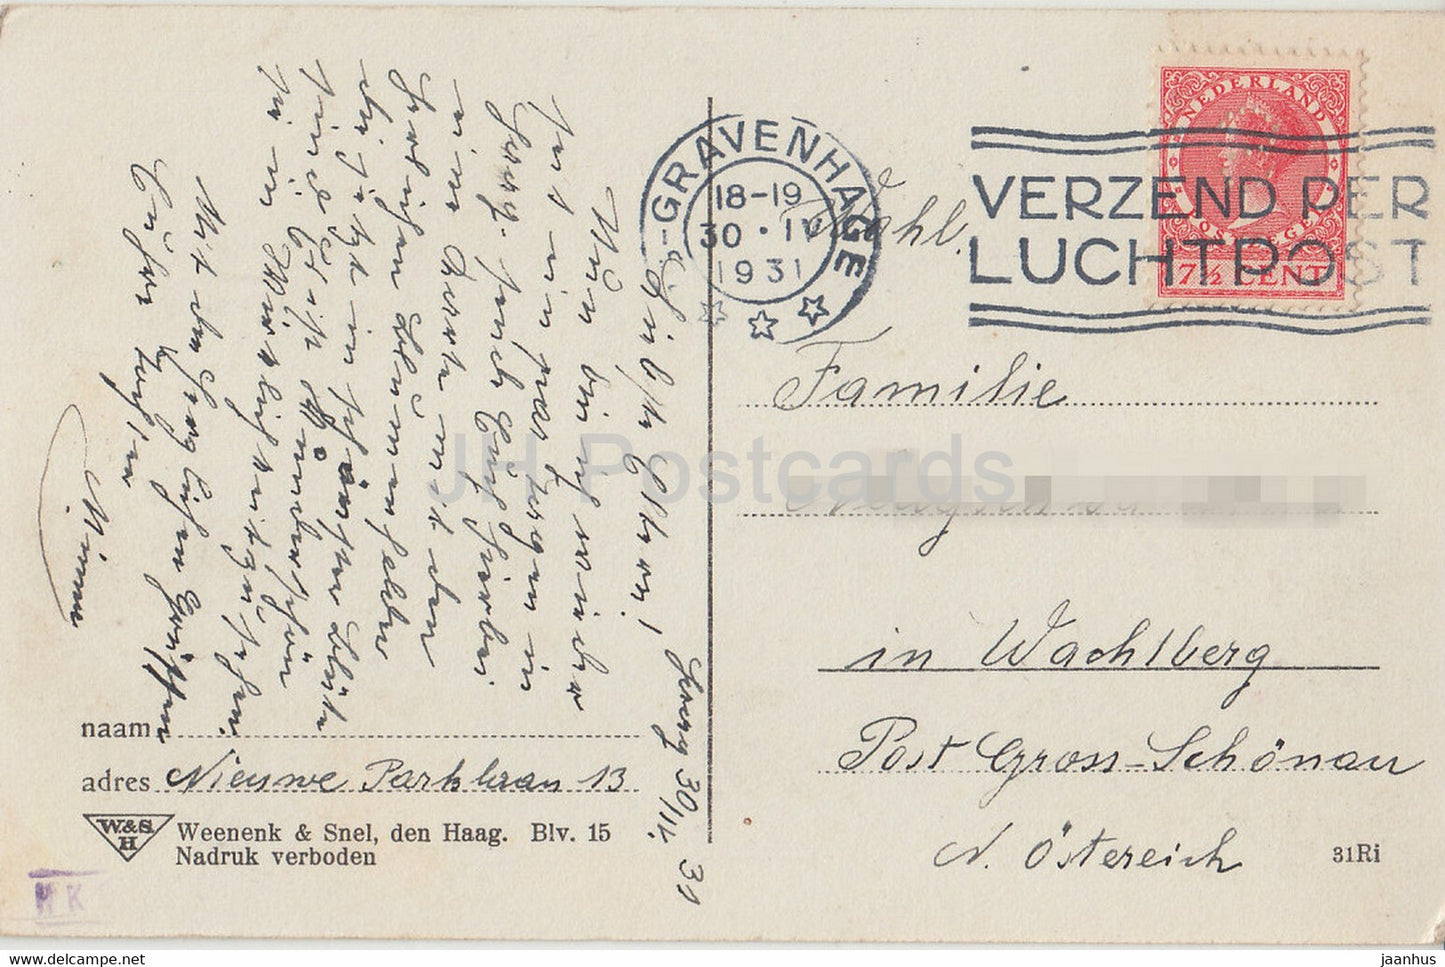 Uit de Bloemenvelden - Hyazinthen - Blumenfeld - Windmühle - alte Postkarte - 1931 - Niederlande - gebraucht